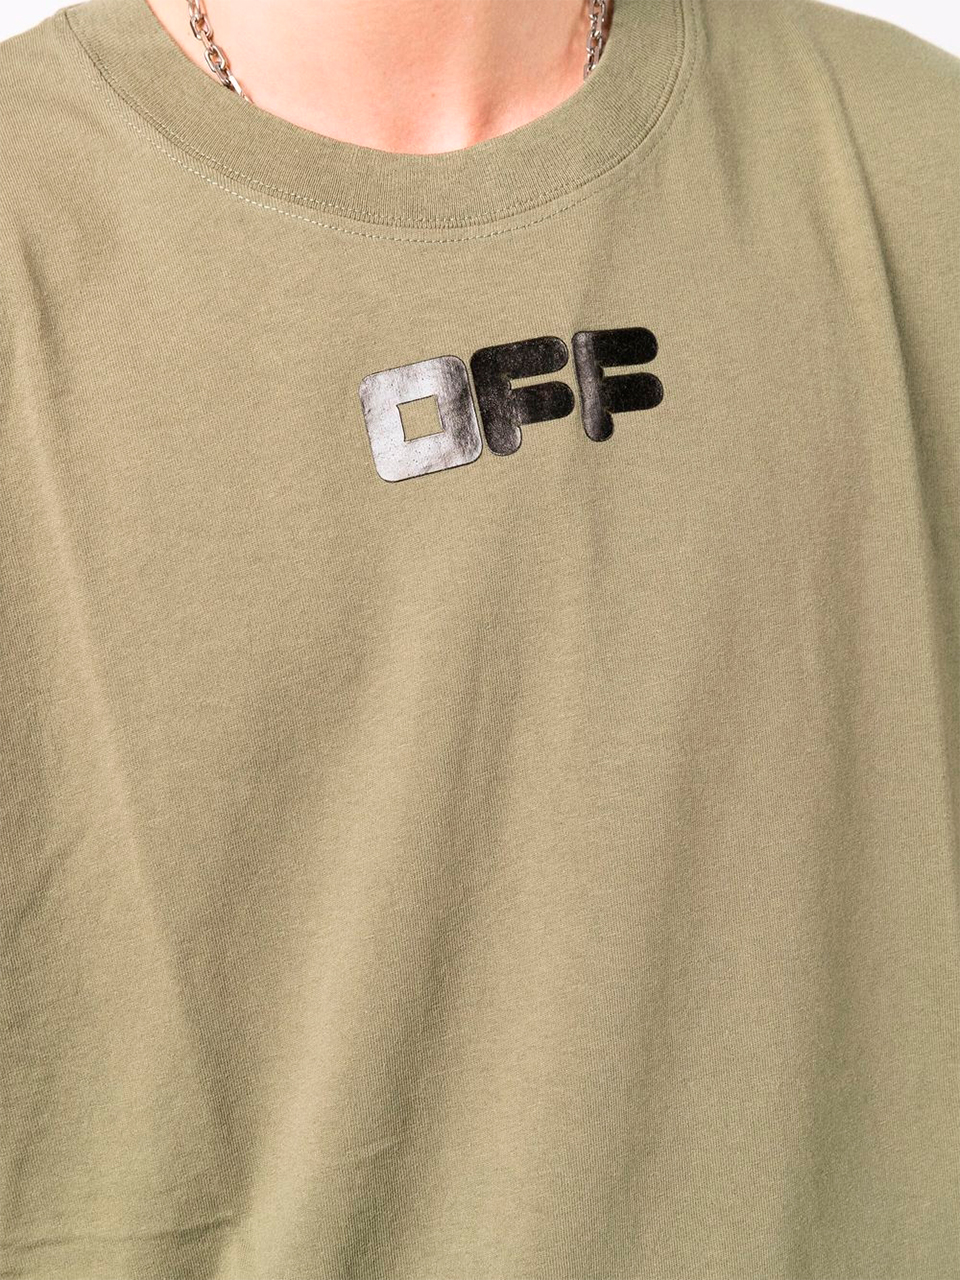 Imagem de: Camiseta Off-White Verde Musgo com Logo Preto